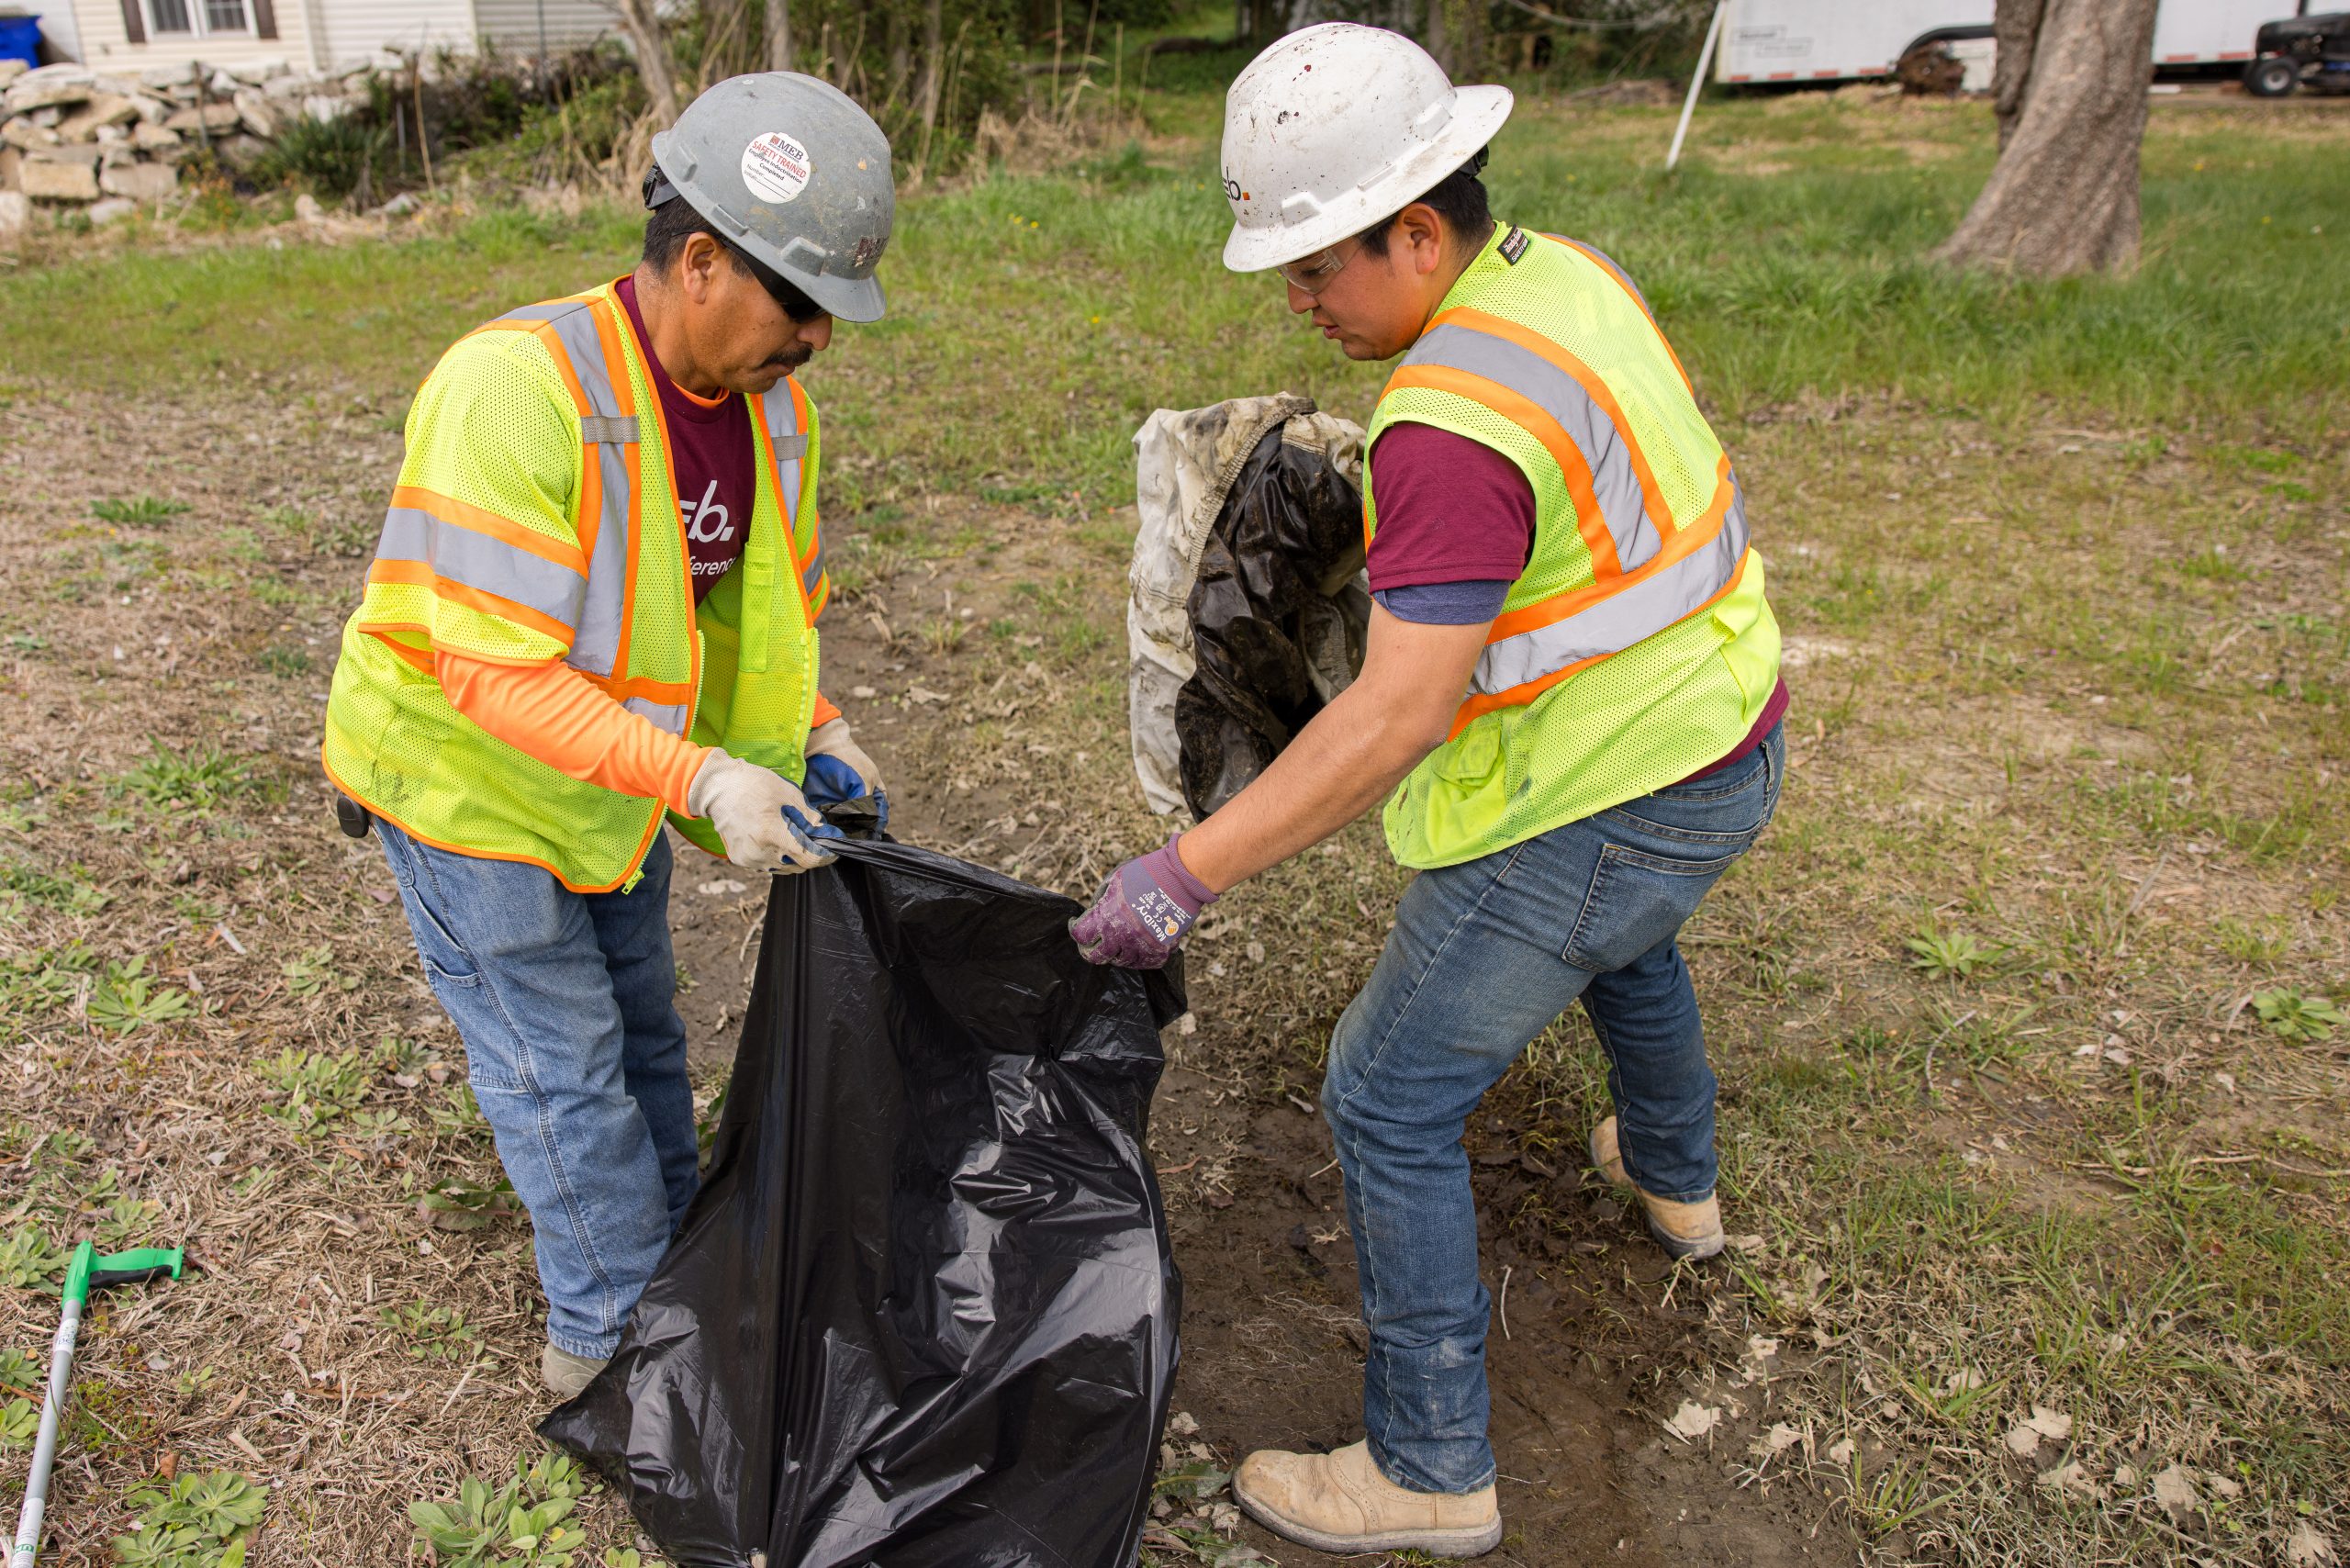 Crew members placing litter into trash bag.